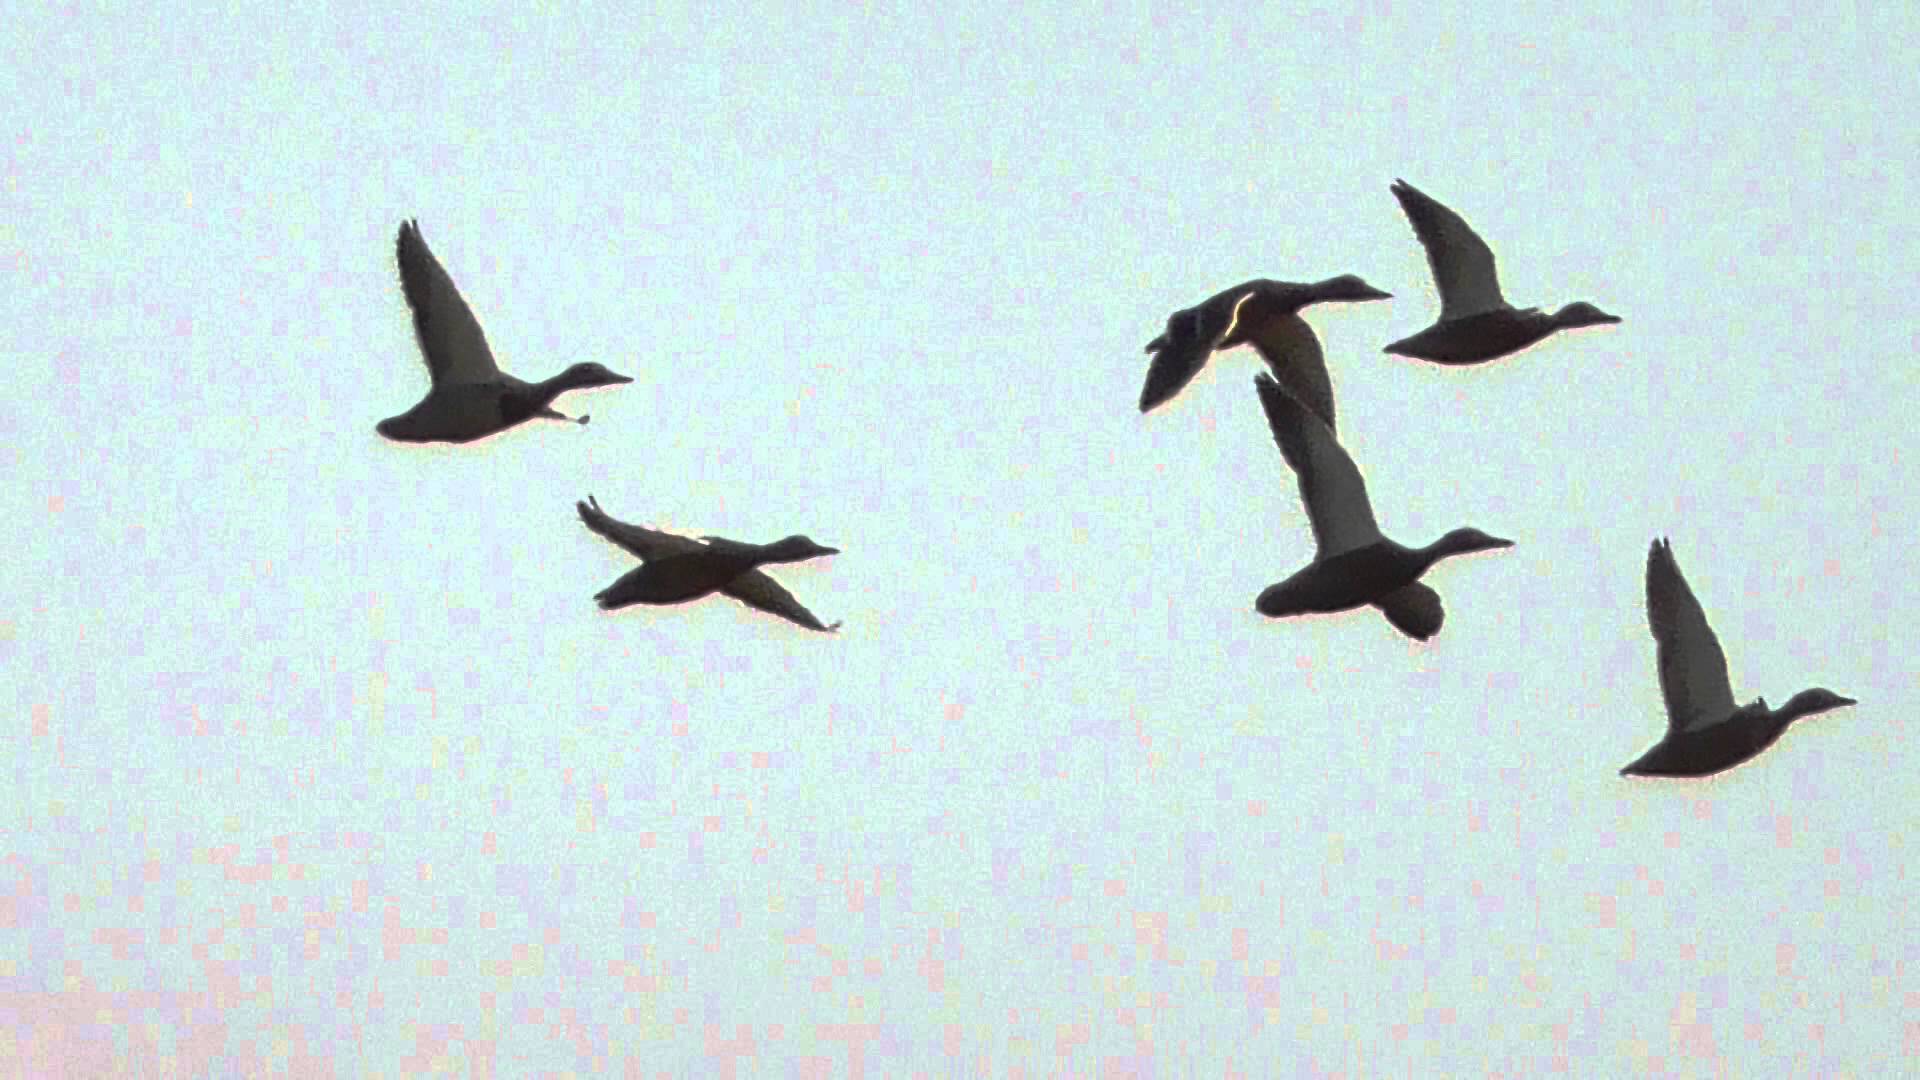 Flying ducks RSPB Minsmere 19Jul15 652p - YouTube